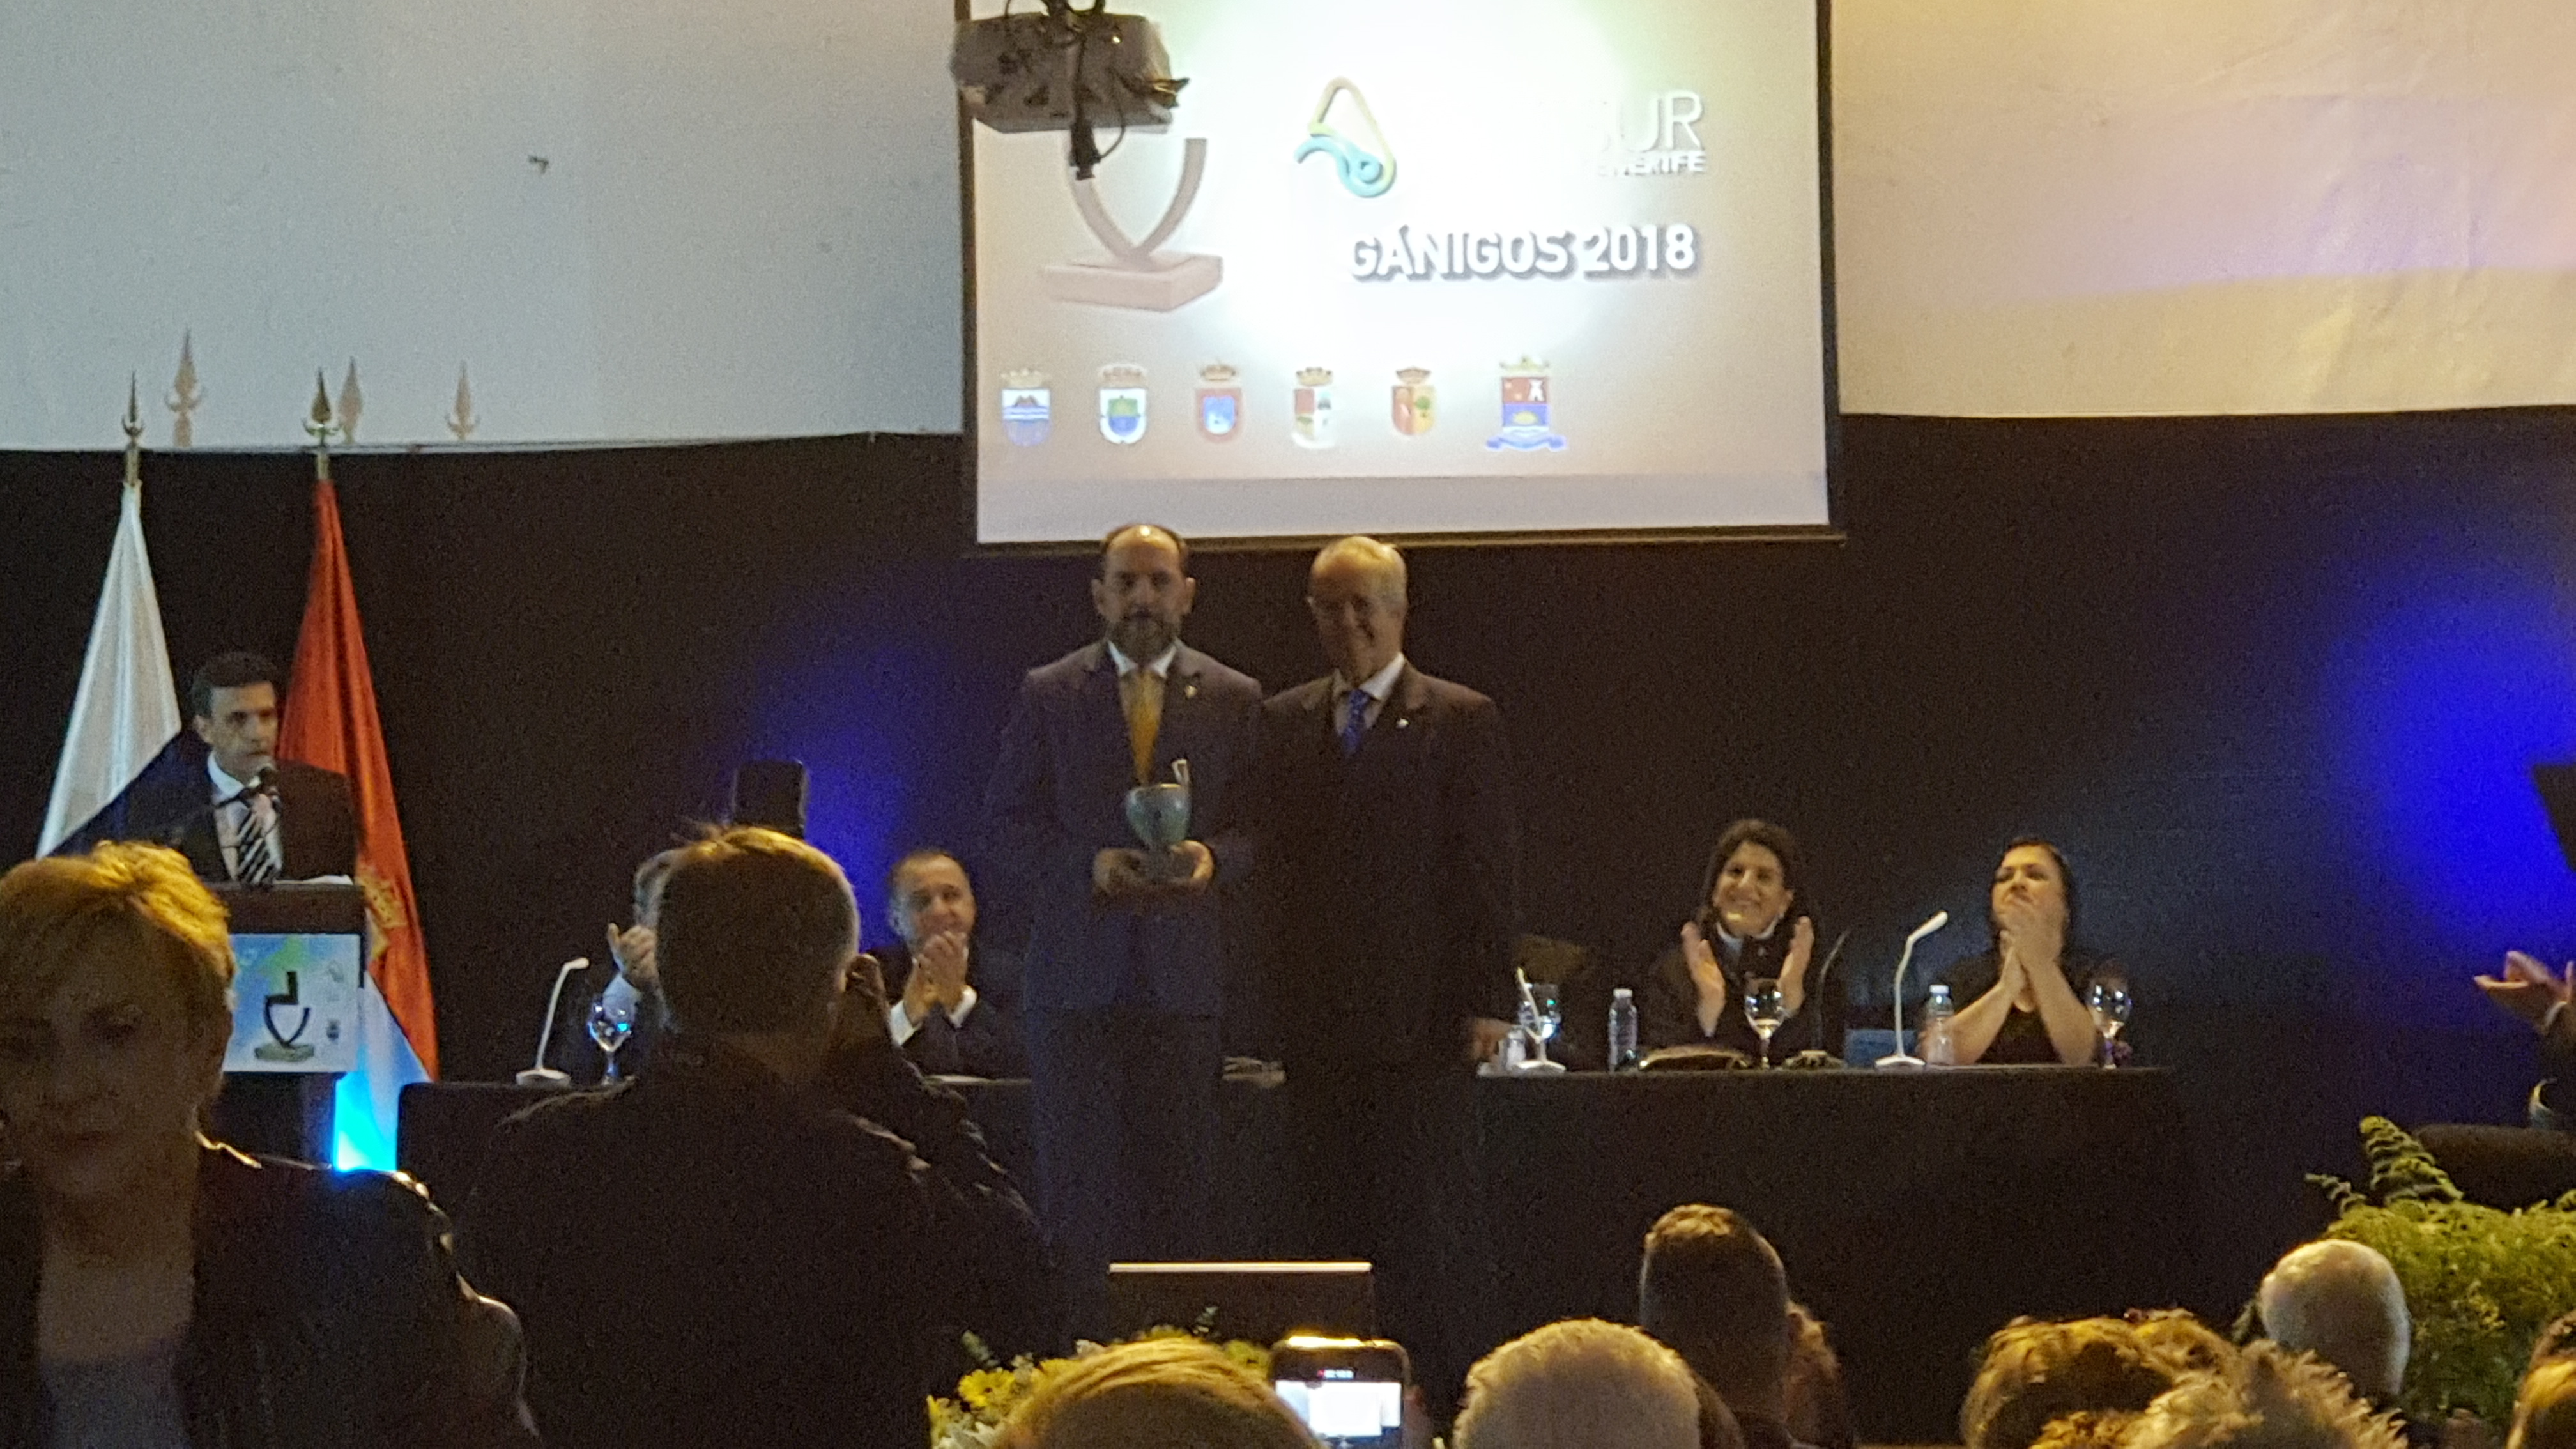 El Cit Sur entrega al Rotary Club Tenerife Sur el Ganigo 2018 en su Mención Honorífoca